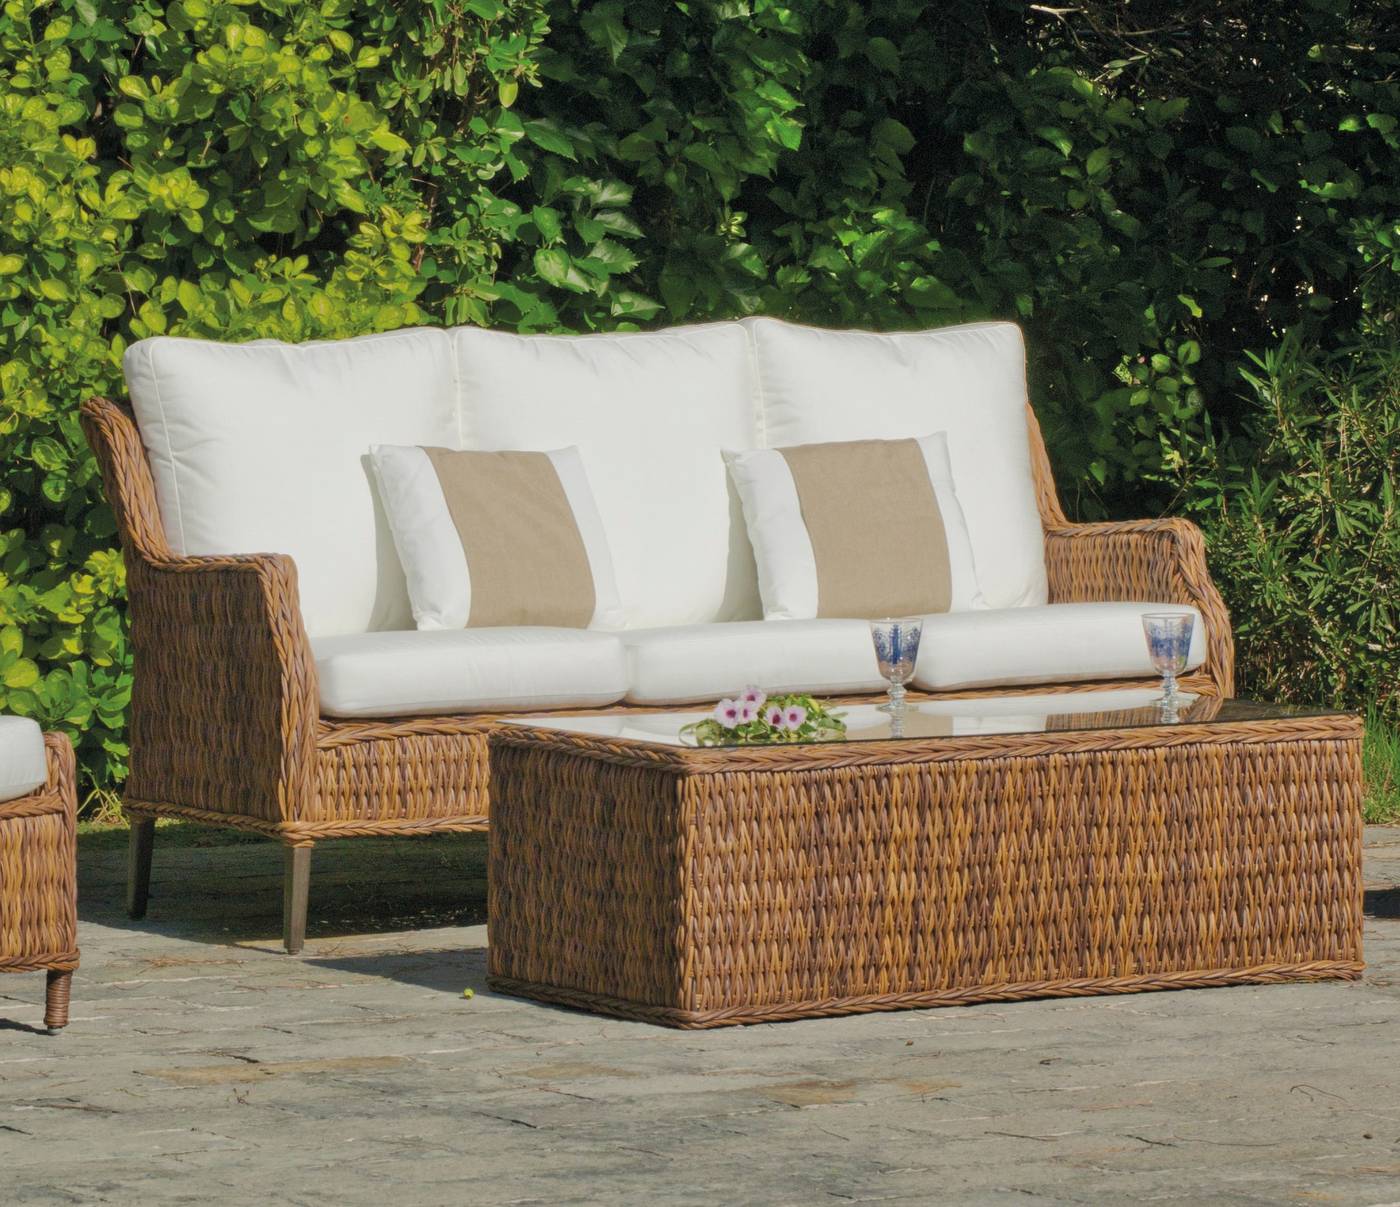 Set Médula Luxe Panama-8 - Conjunto de médula sintética lujo para jardín. Formado por: 1 sofá de 3 plazas + 2 sillones + 1 mesa de centro + cojines